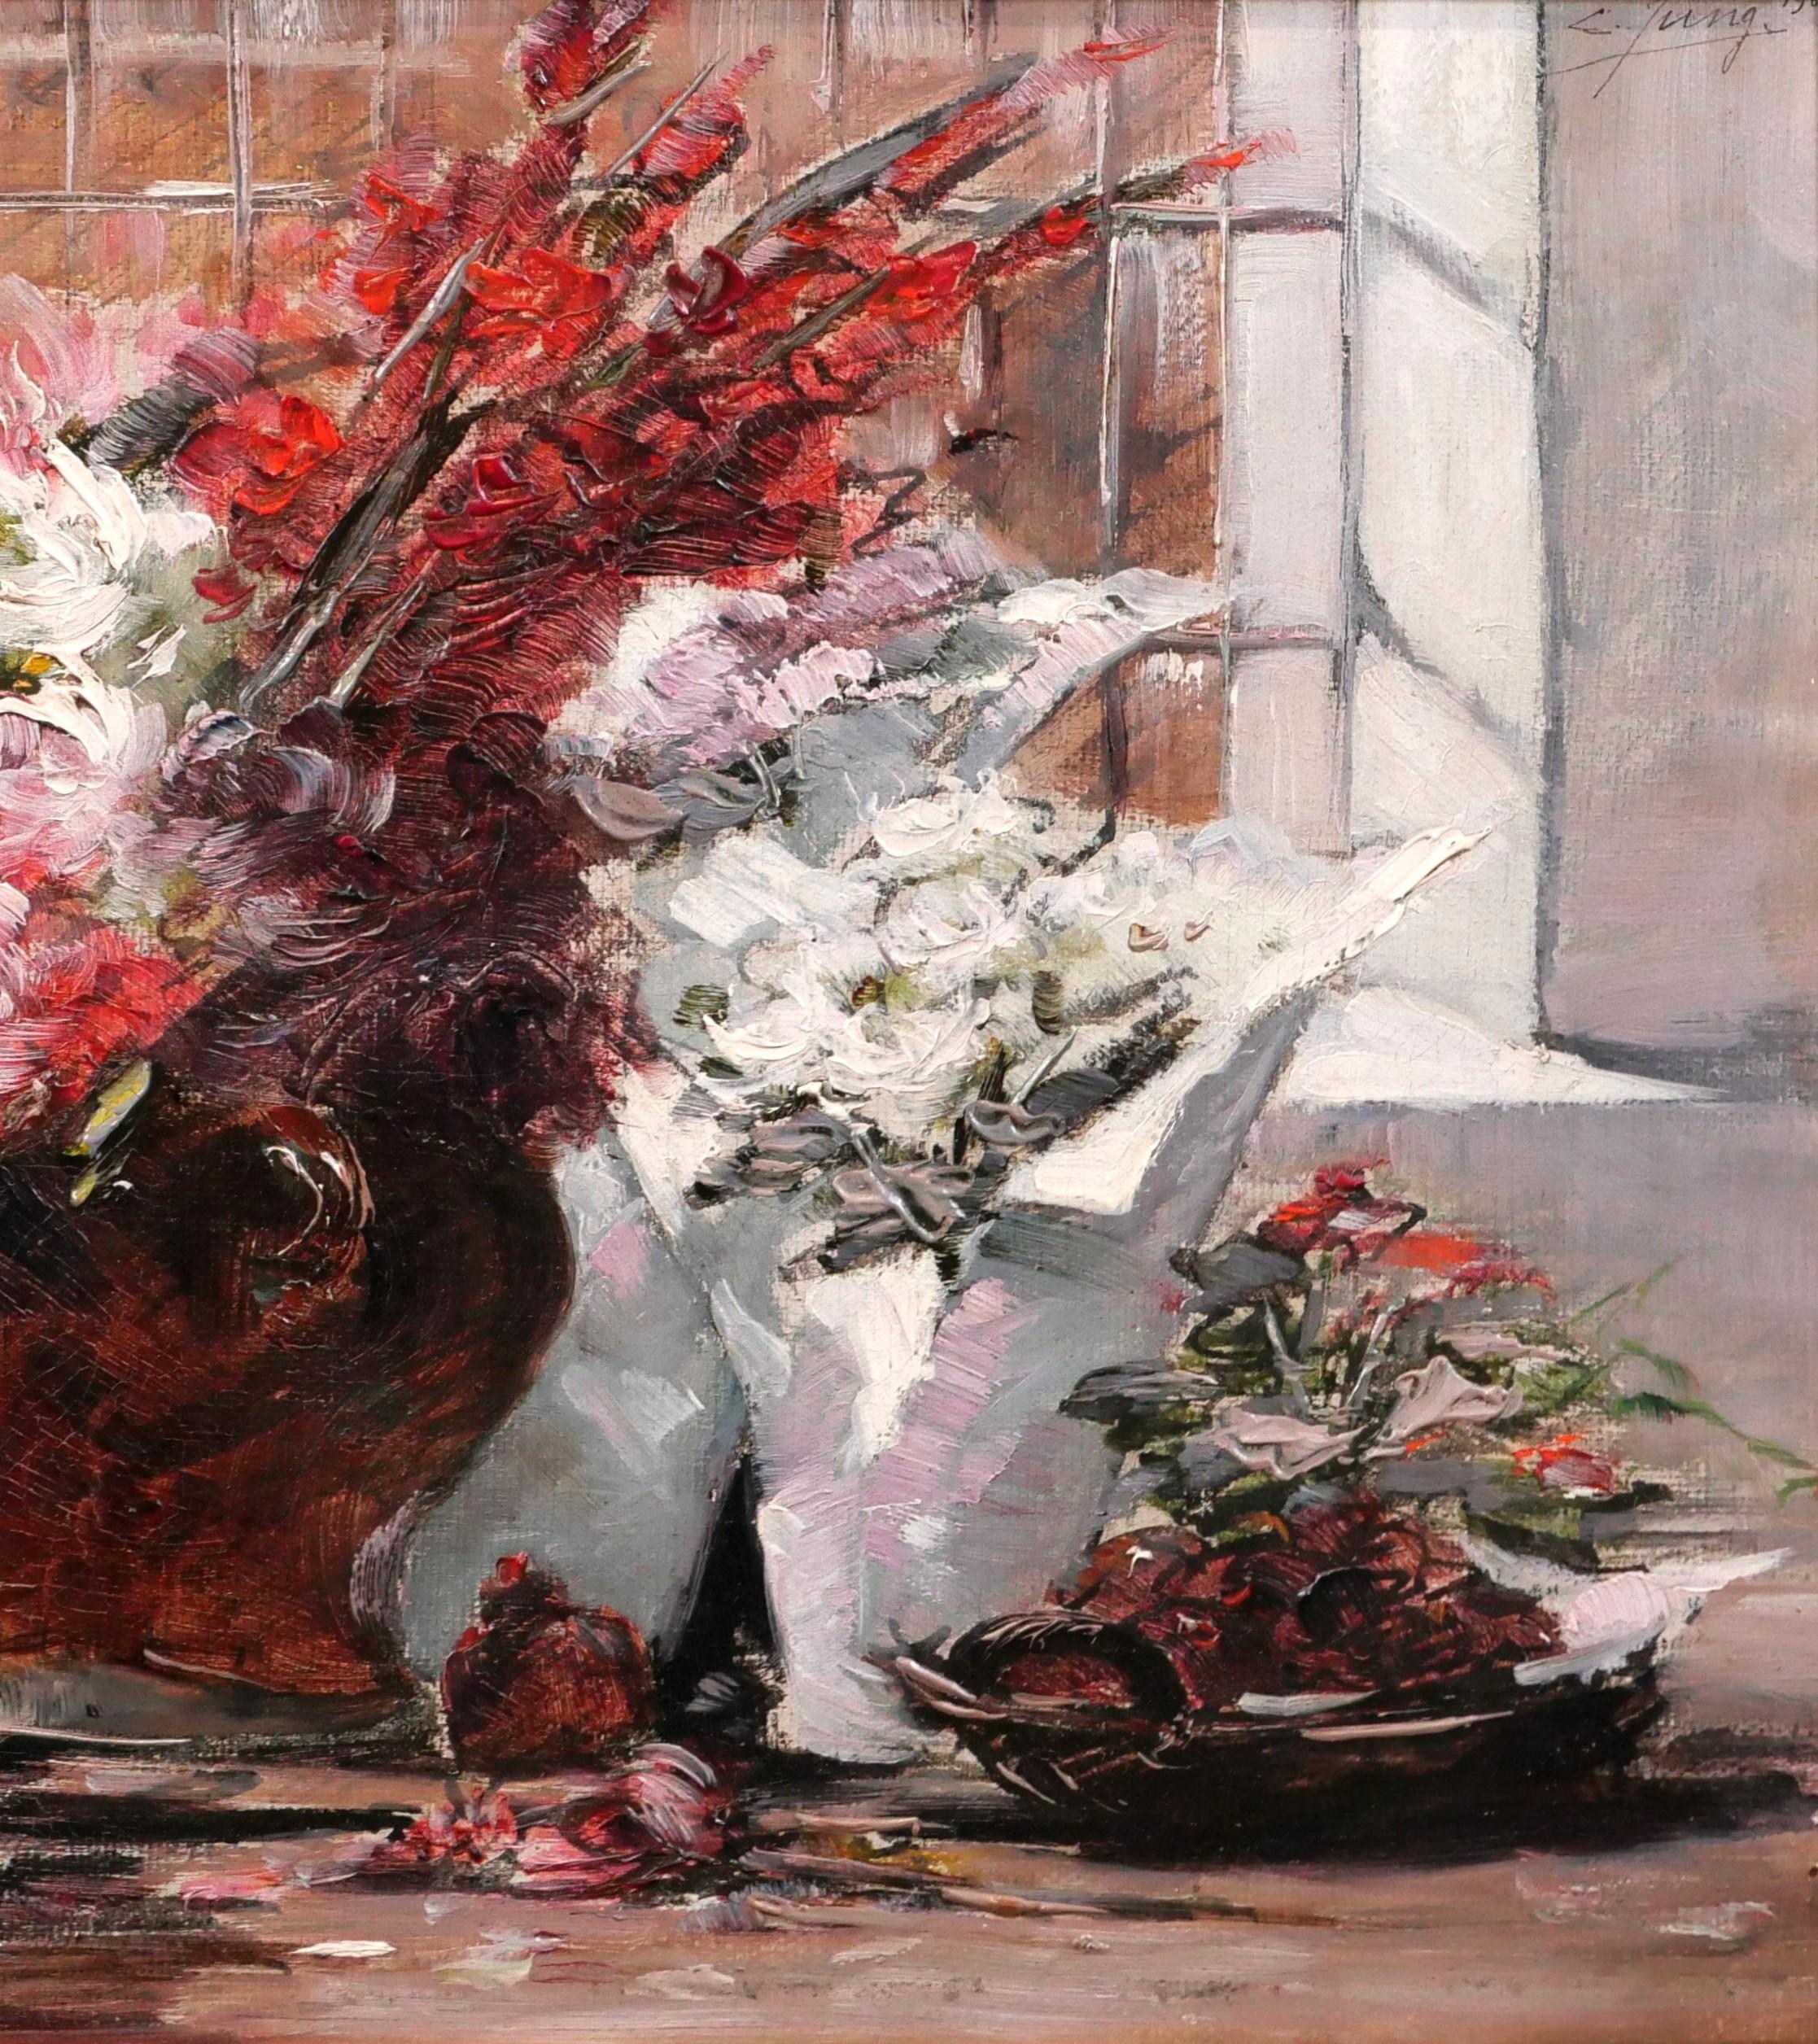 Charles JUNG
1865-1936, Français
Nature morte avec pots de fleurs
Peinture, huile sur toile
Signé et daté 1901 en haut à droite
Peinture : 32,5 x 24,5 cm (12,8 x 9,6 pouces)
Cadre moderne : 42 x 34 cm (16.5 x 13.4 pouces)
Très bon état.